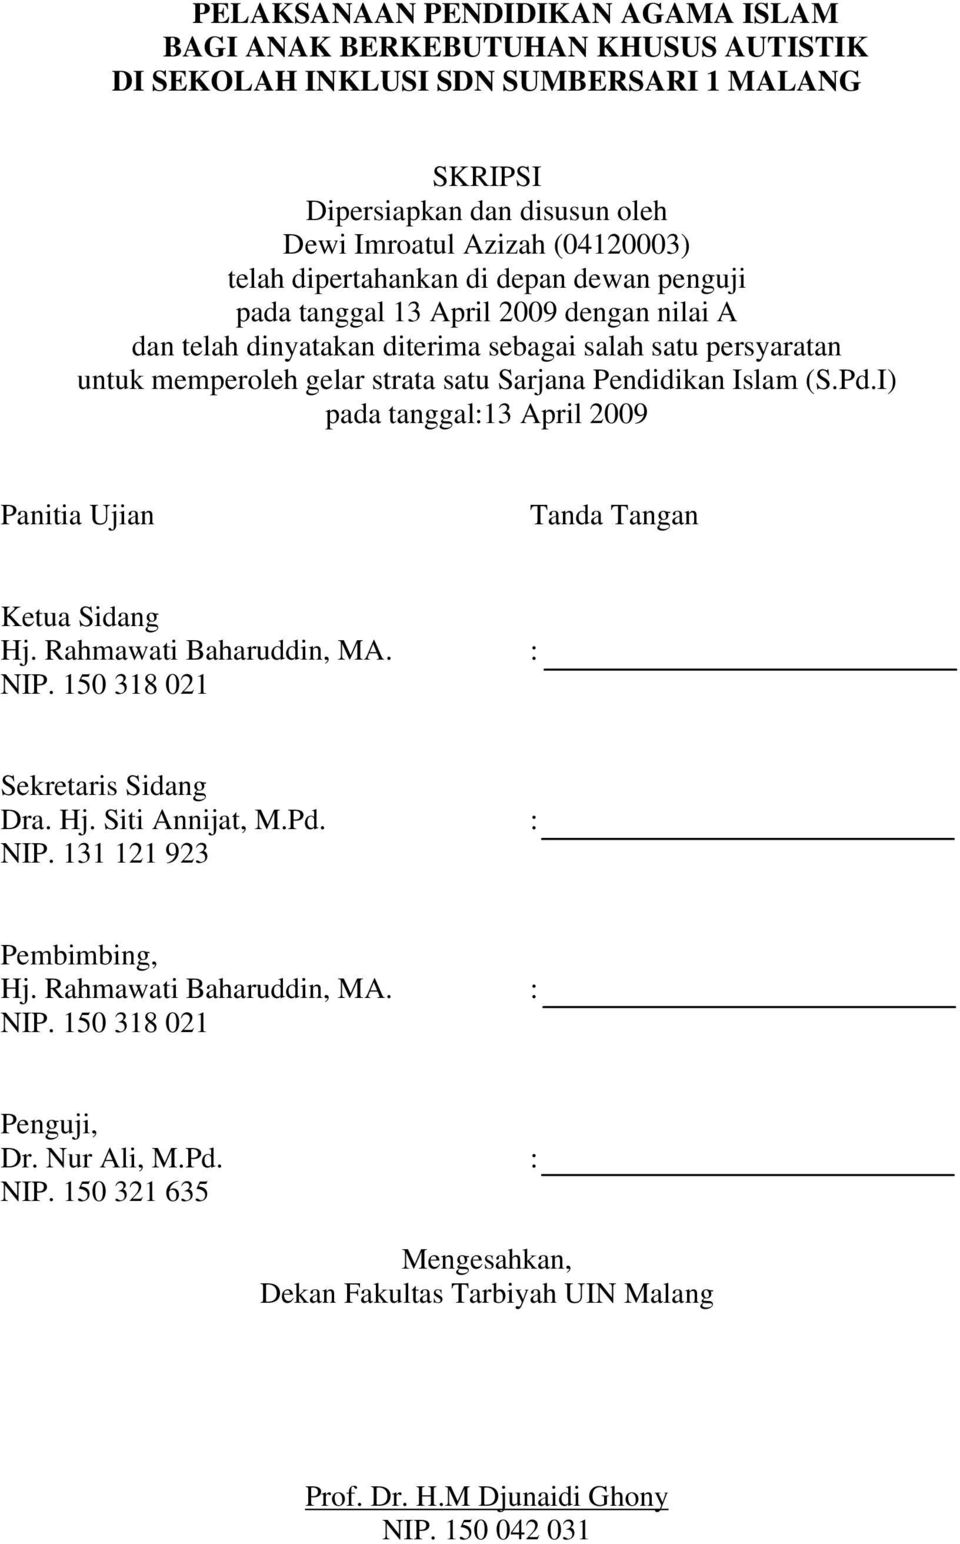 Islam (S.Pd.I) pada tanggal:13 April 2009 Panitia Ujian Tanda Tangan Ketua Sidang Hj. Rahmawati Baharuddin, MA. : NIP. 150 318 021 Sekretaris Sidang Dra. Hj. Siti Annijat, M.Pd. : NIP. 131 121 923 Pembimbing, Hj.